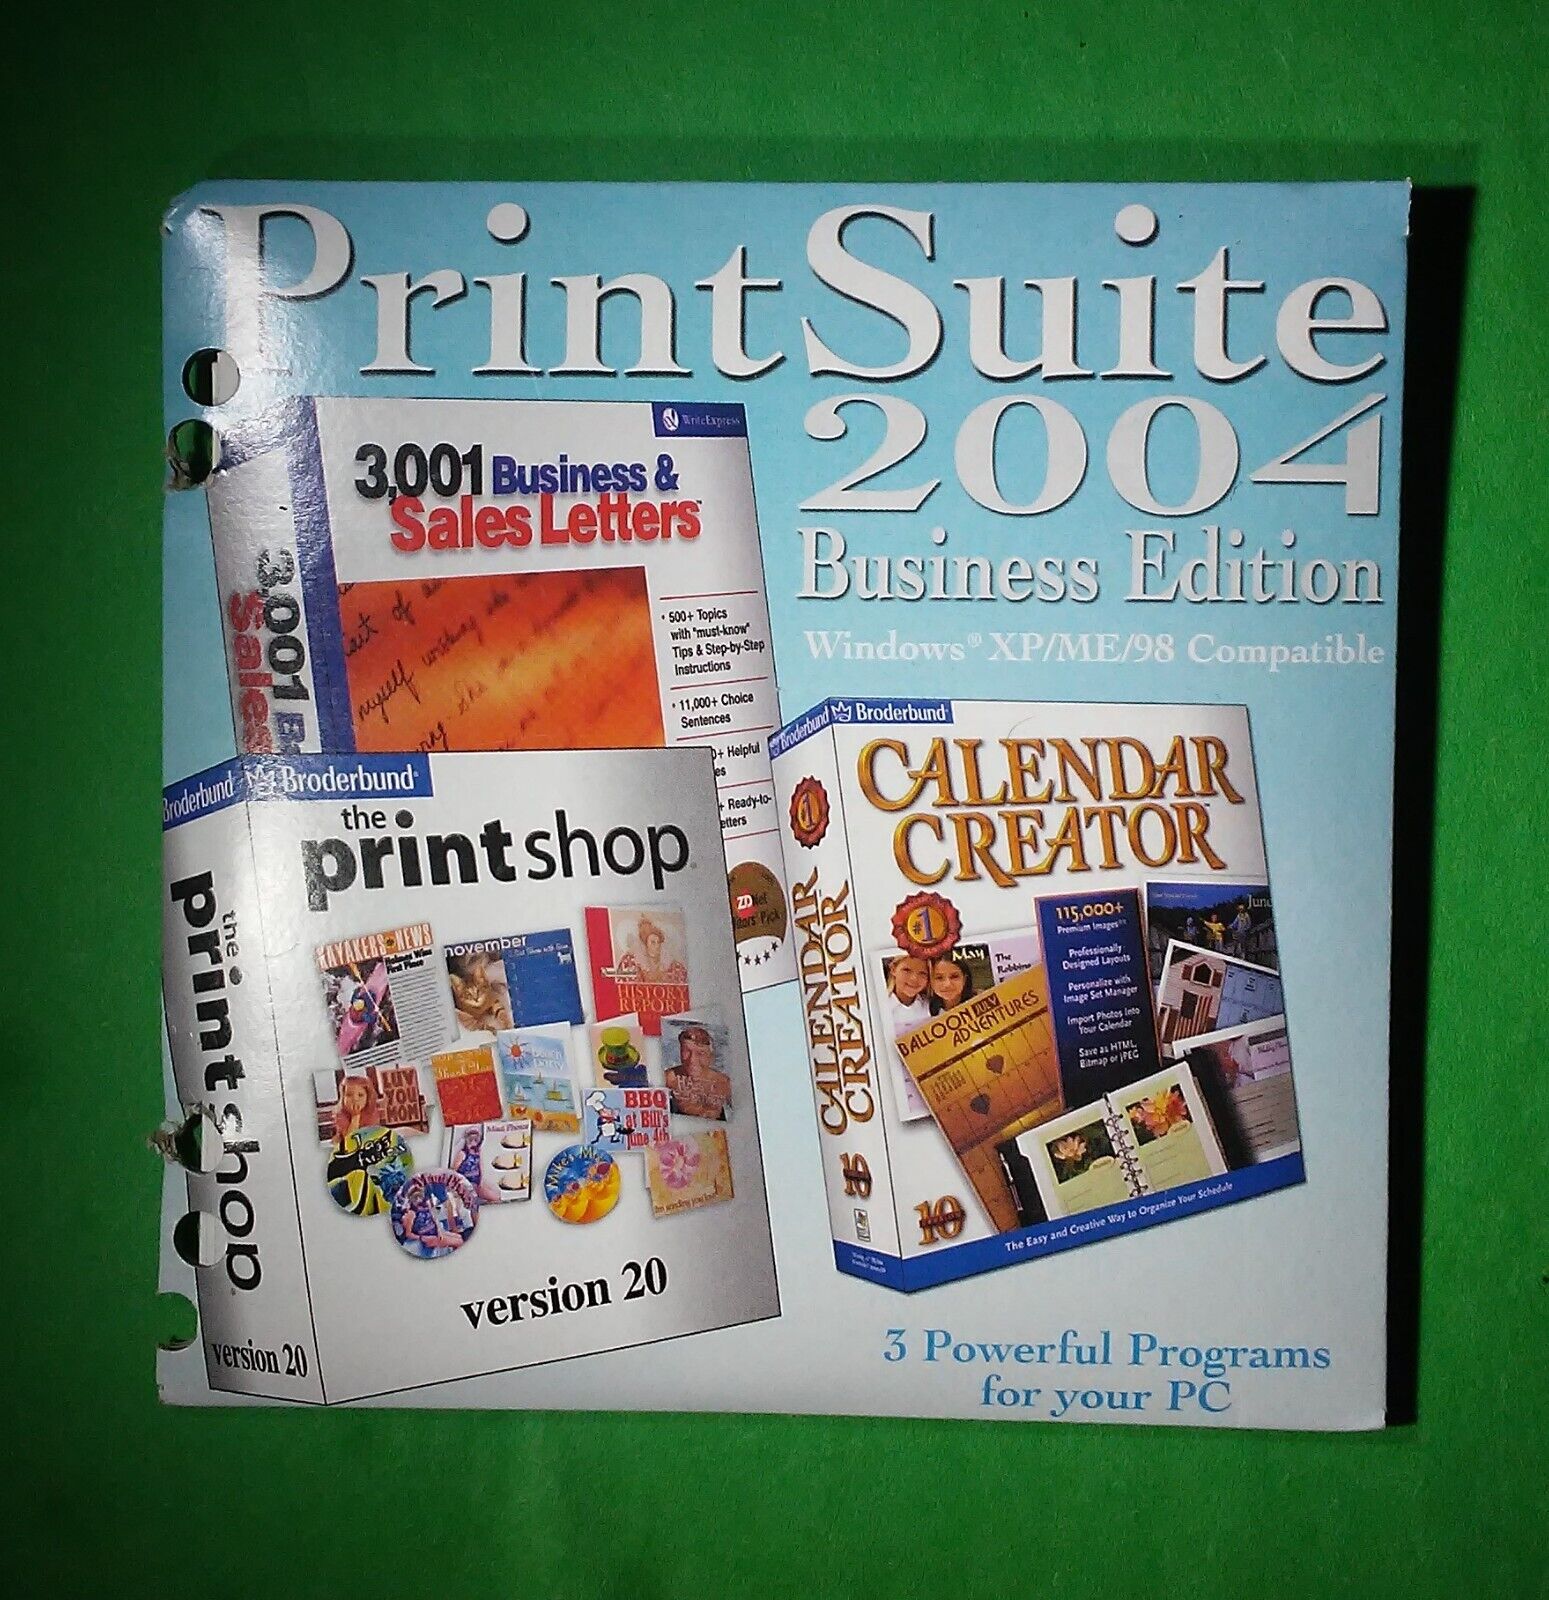 Print Suite Business Edition 2004 3 disk set Print Shop, Calendar Creator & Bus.